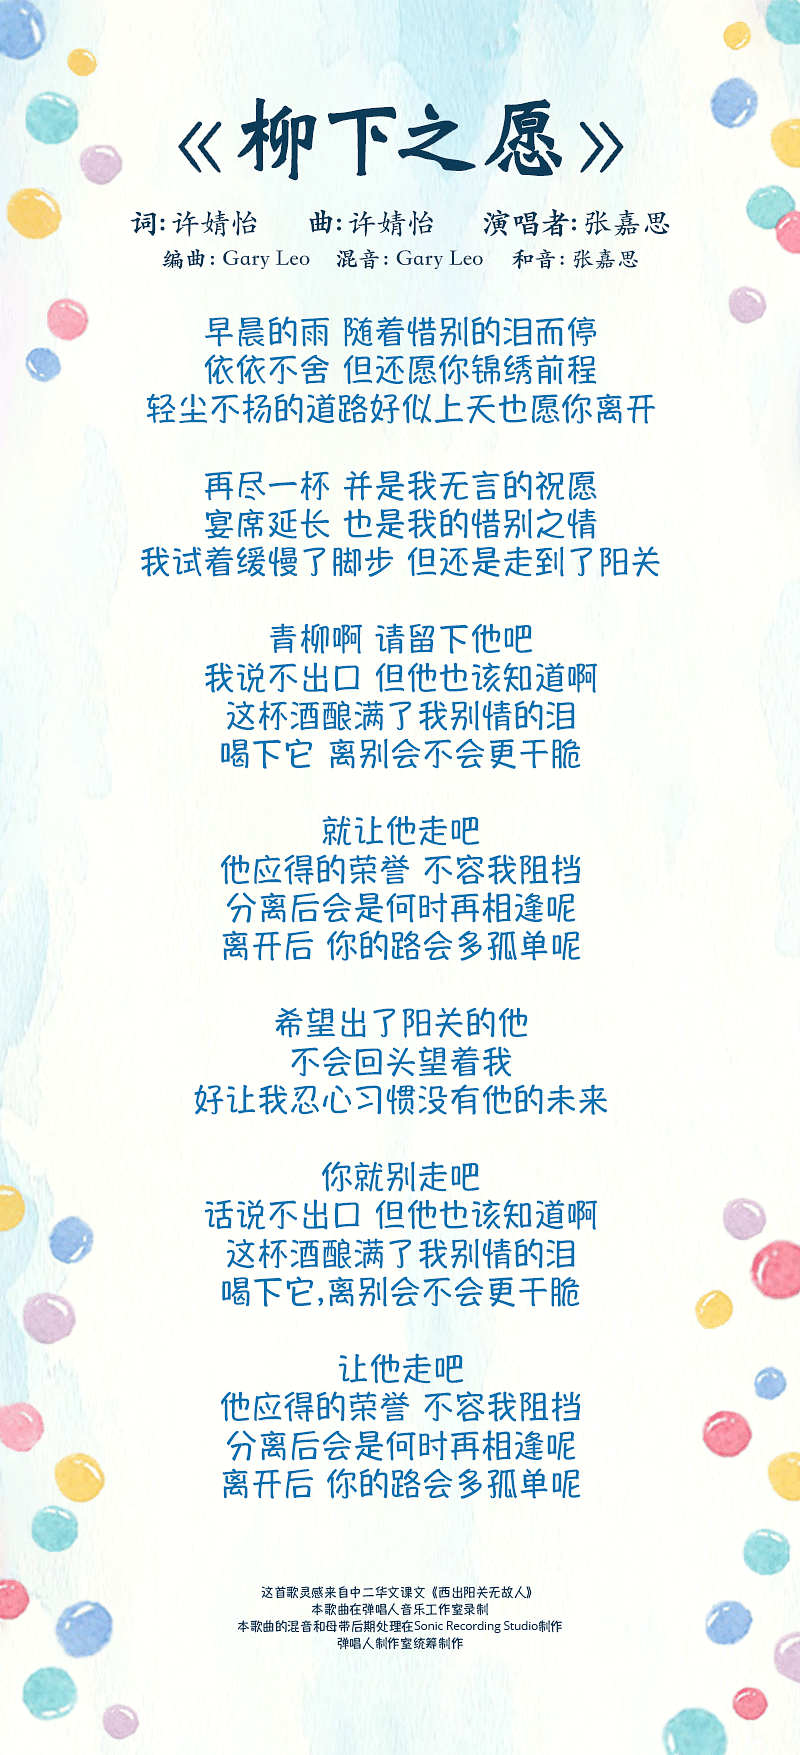 liu-xia-zhi-yuan-lyrics-mobile.png